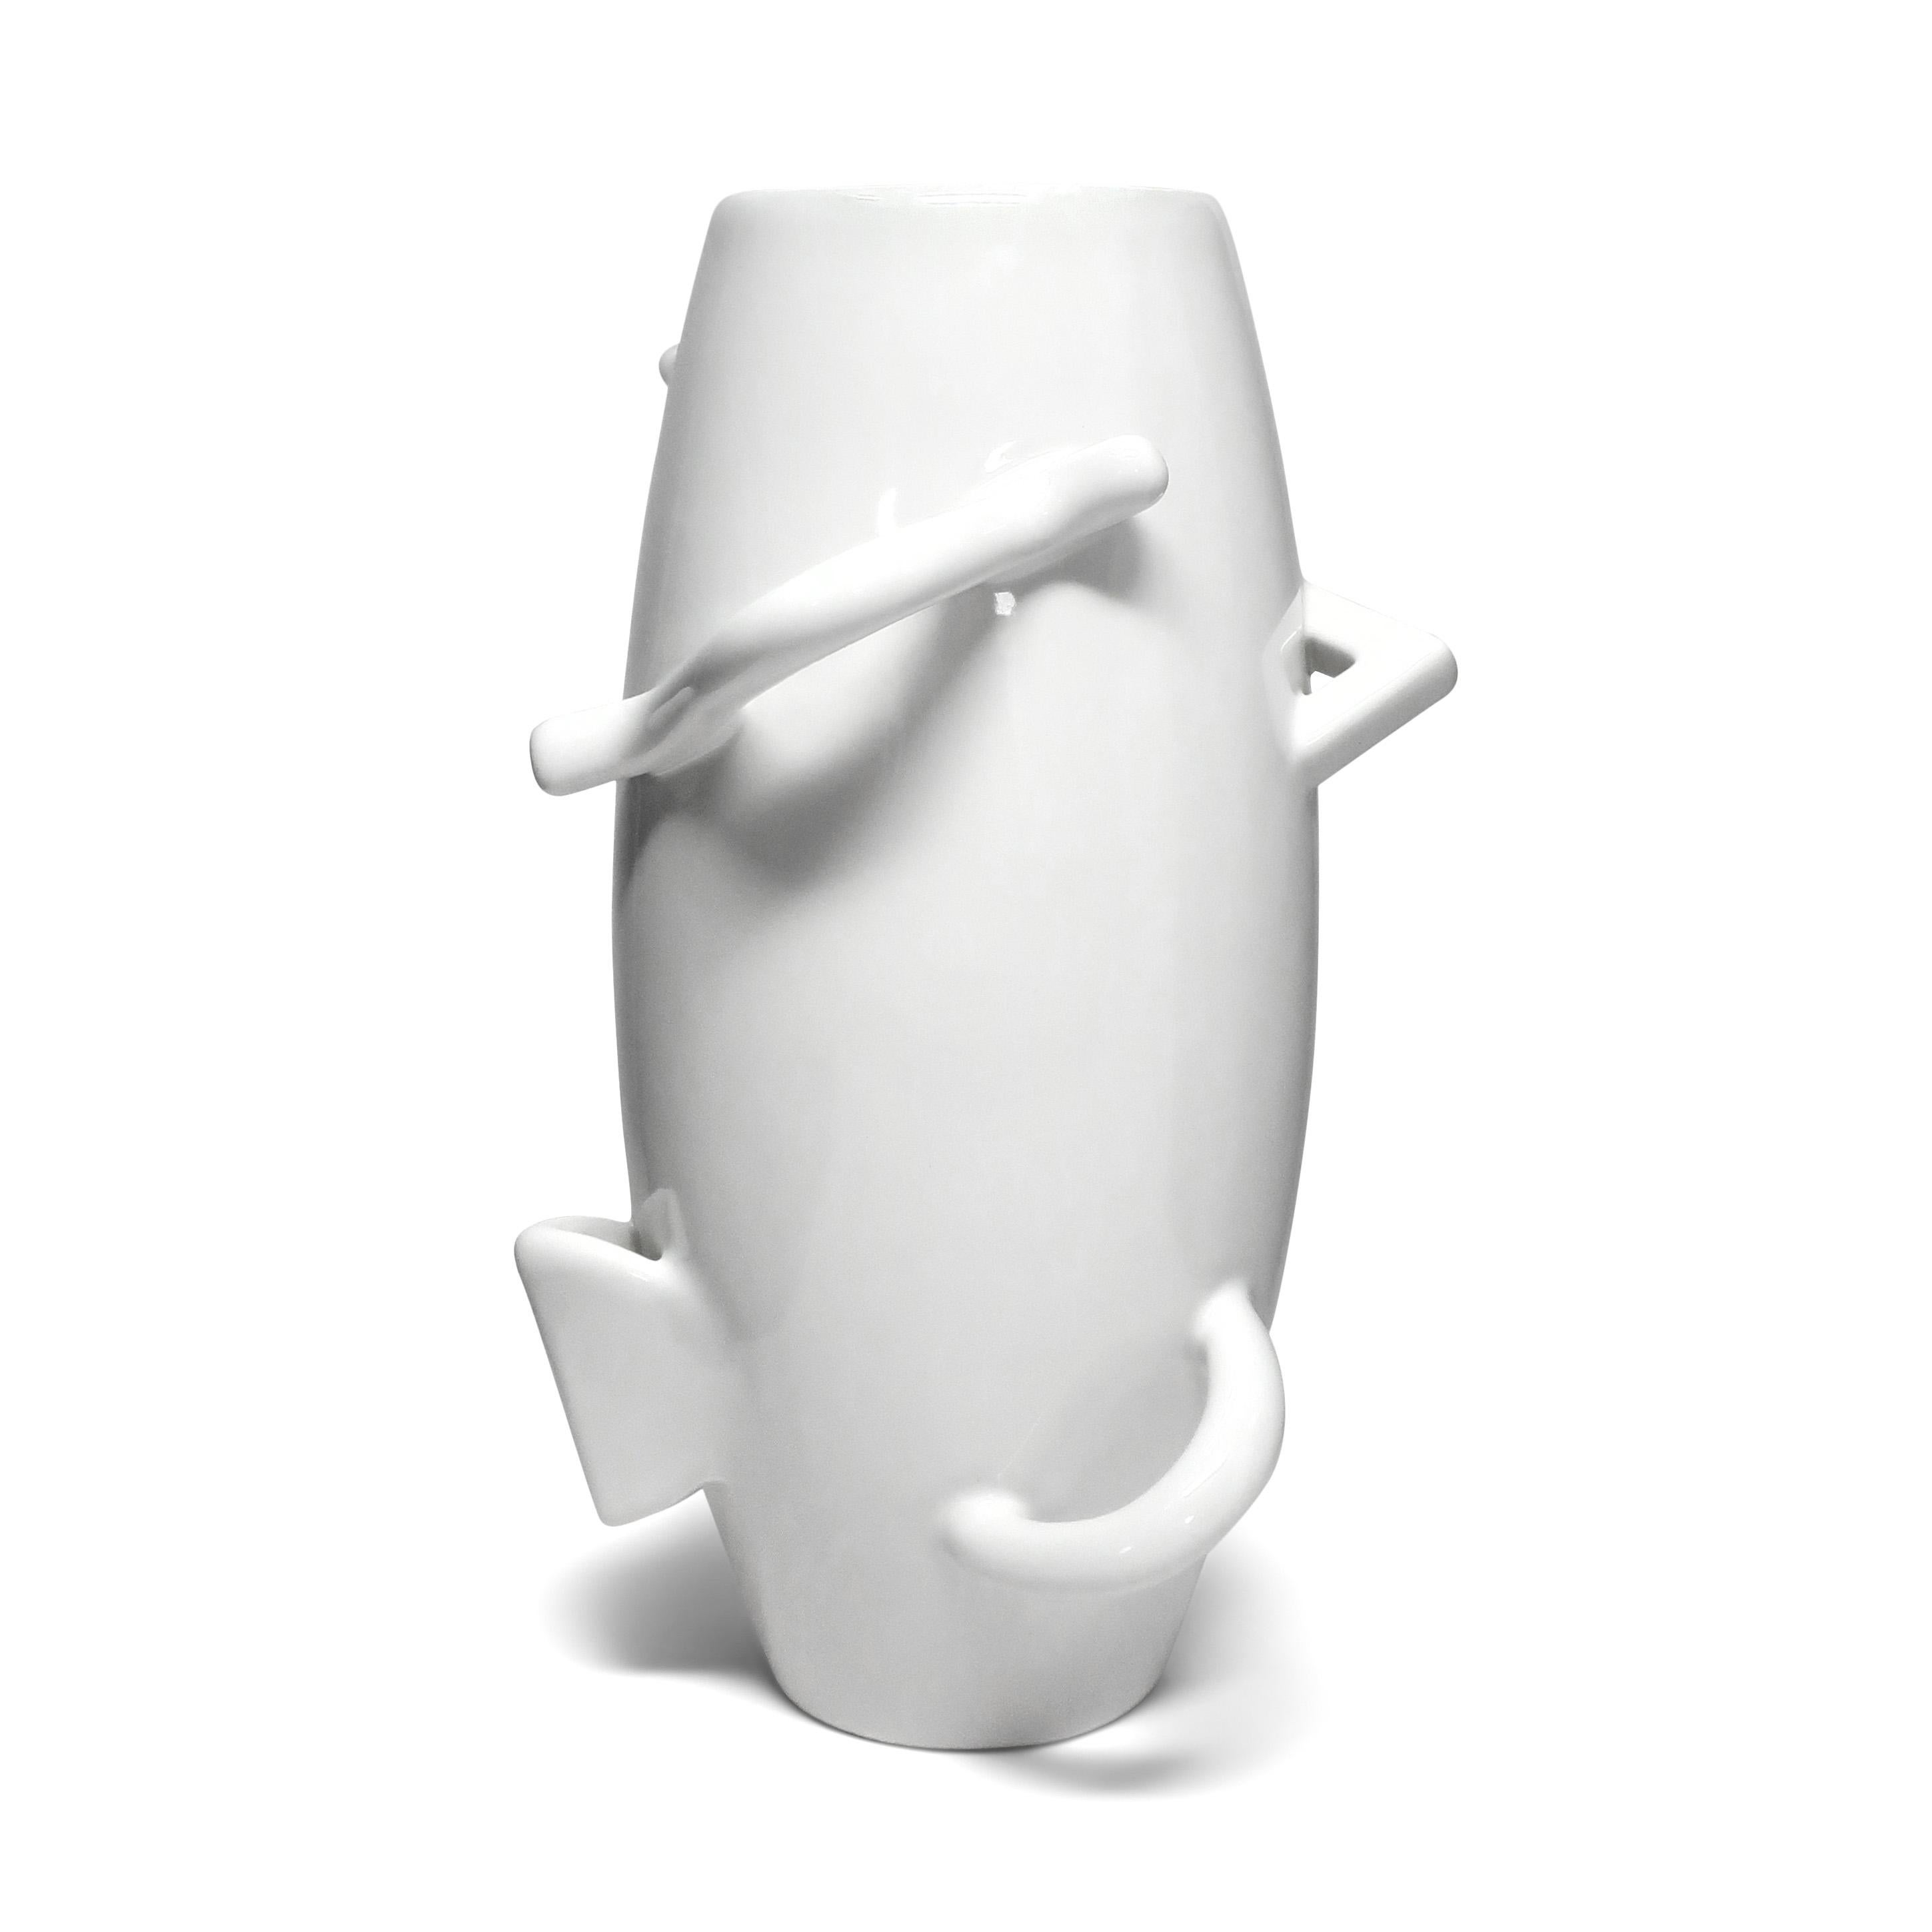 Un étonnant vase postmoderne en porcelaine blanche conçu par Alessandro Mendini (né en 1931) pour la collection 